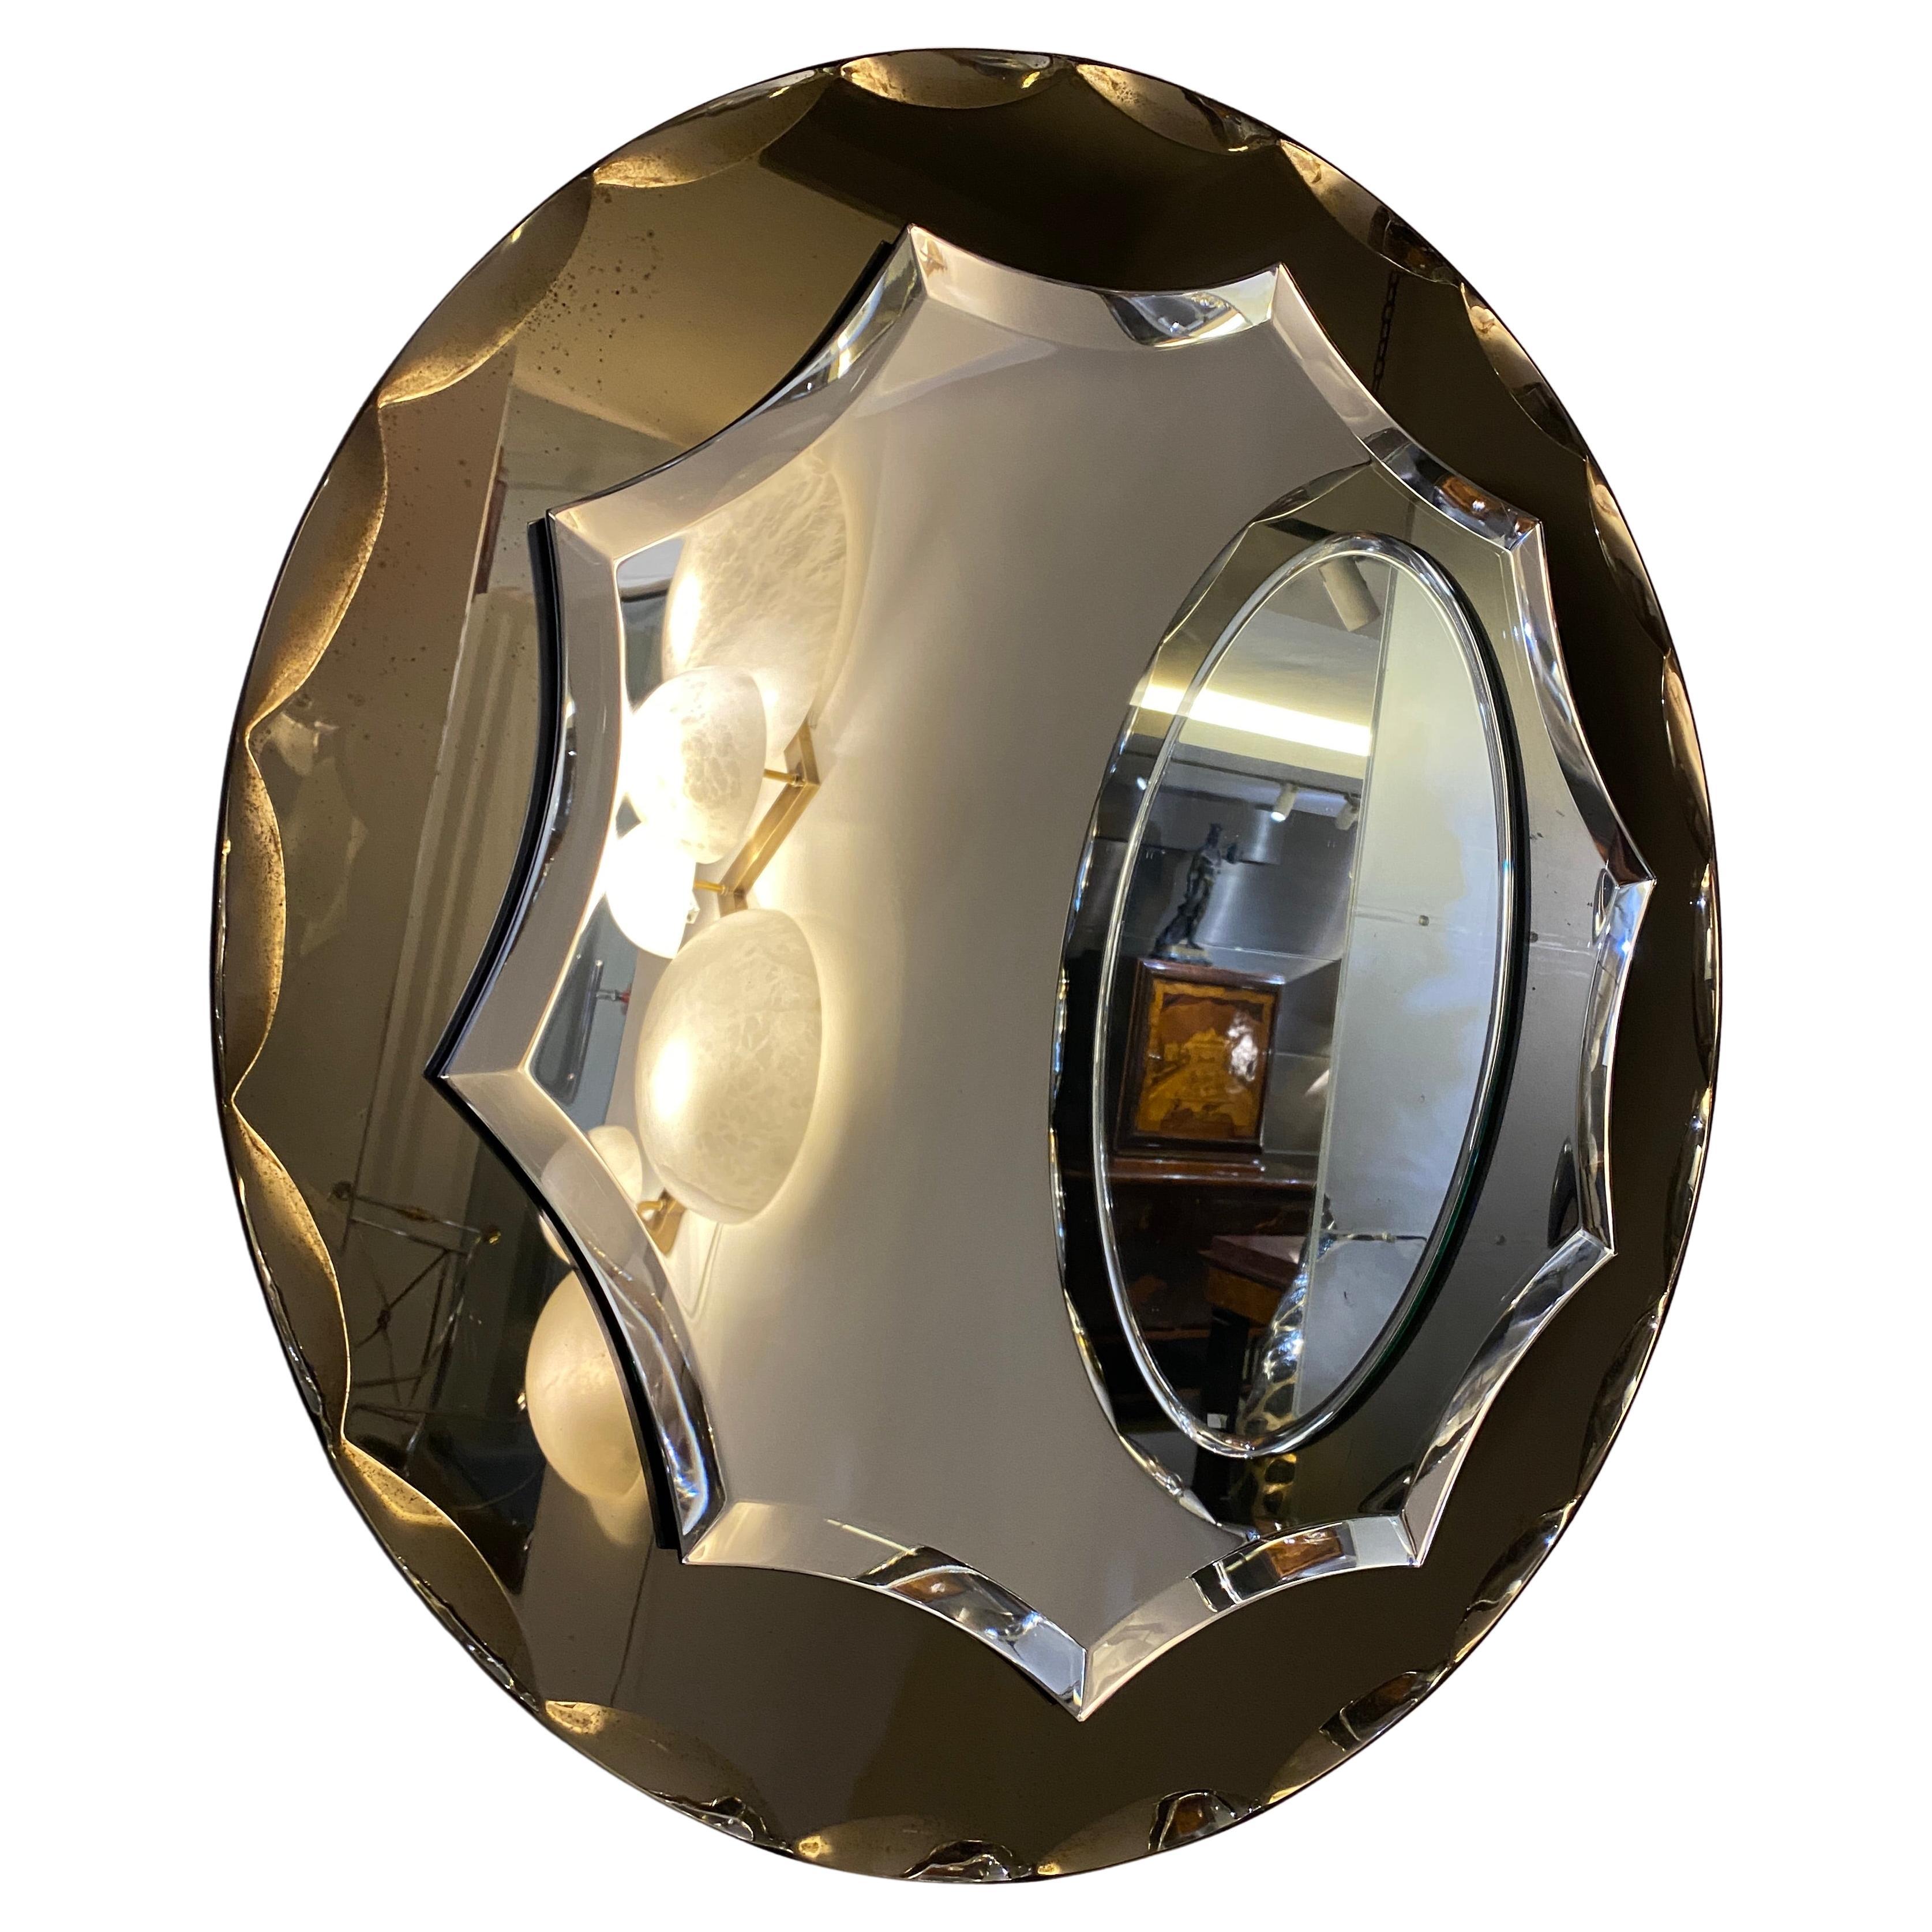 Magnifique miroir attribué à Max Ingrand pour Fontana Arte. Le miroir est en verre facetté de couleur fumée encadré.
Il s'agit d'un reflet de quelque chose d'autre, qui n'a rien à voir avec le miroir.
 